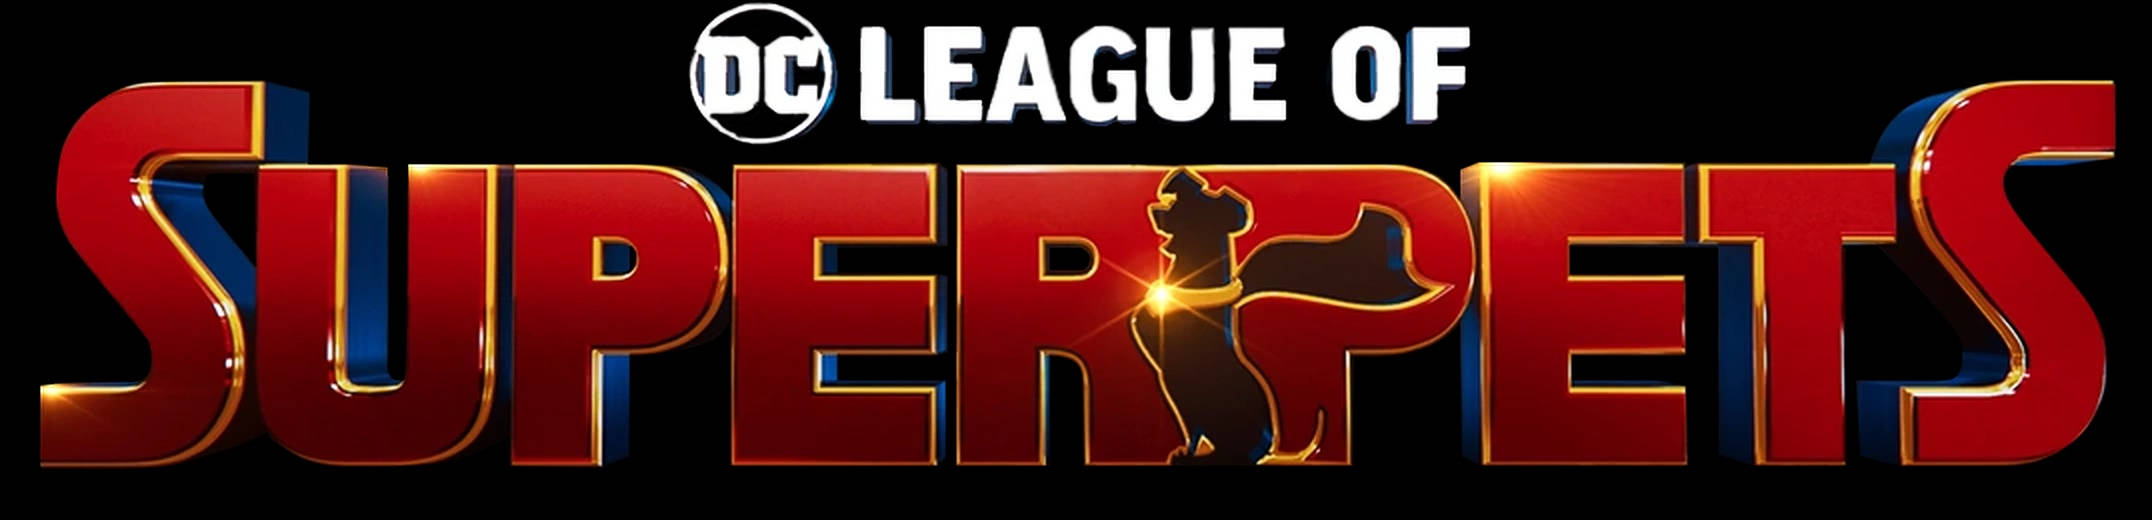 Dc League Of Super Pets Logo Wallpaper